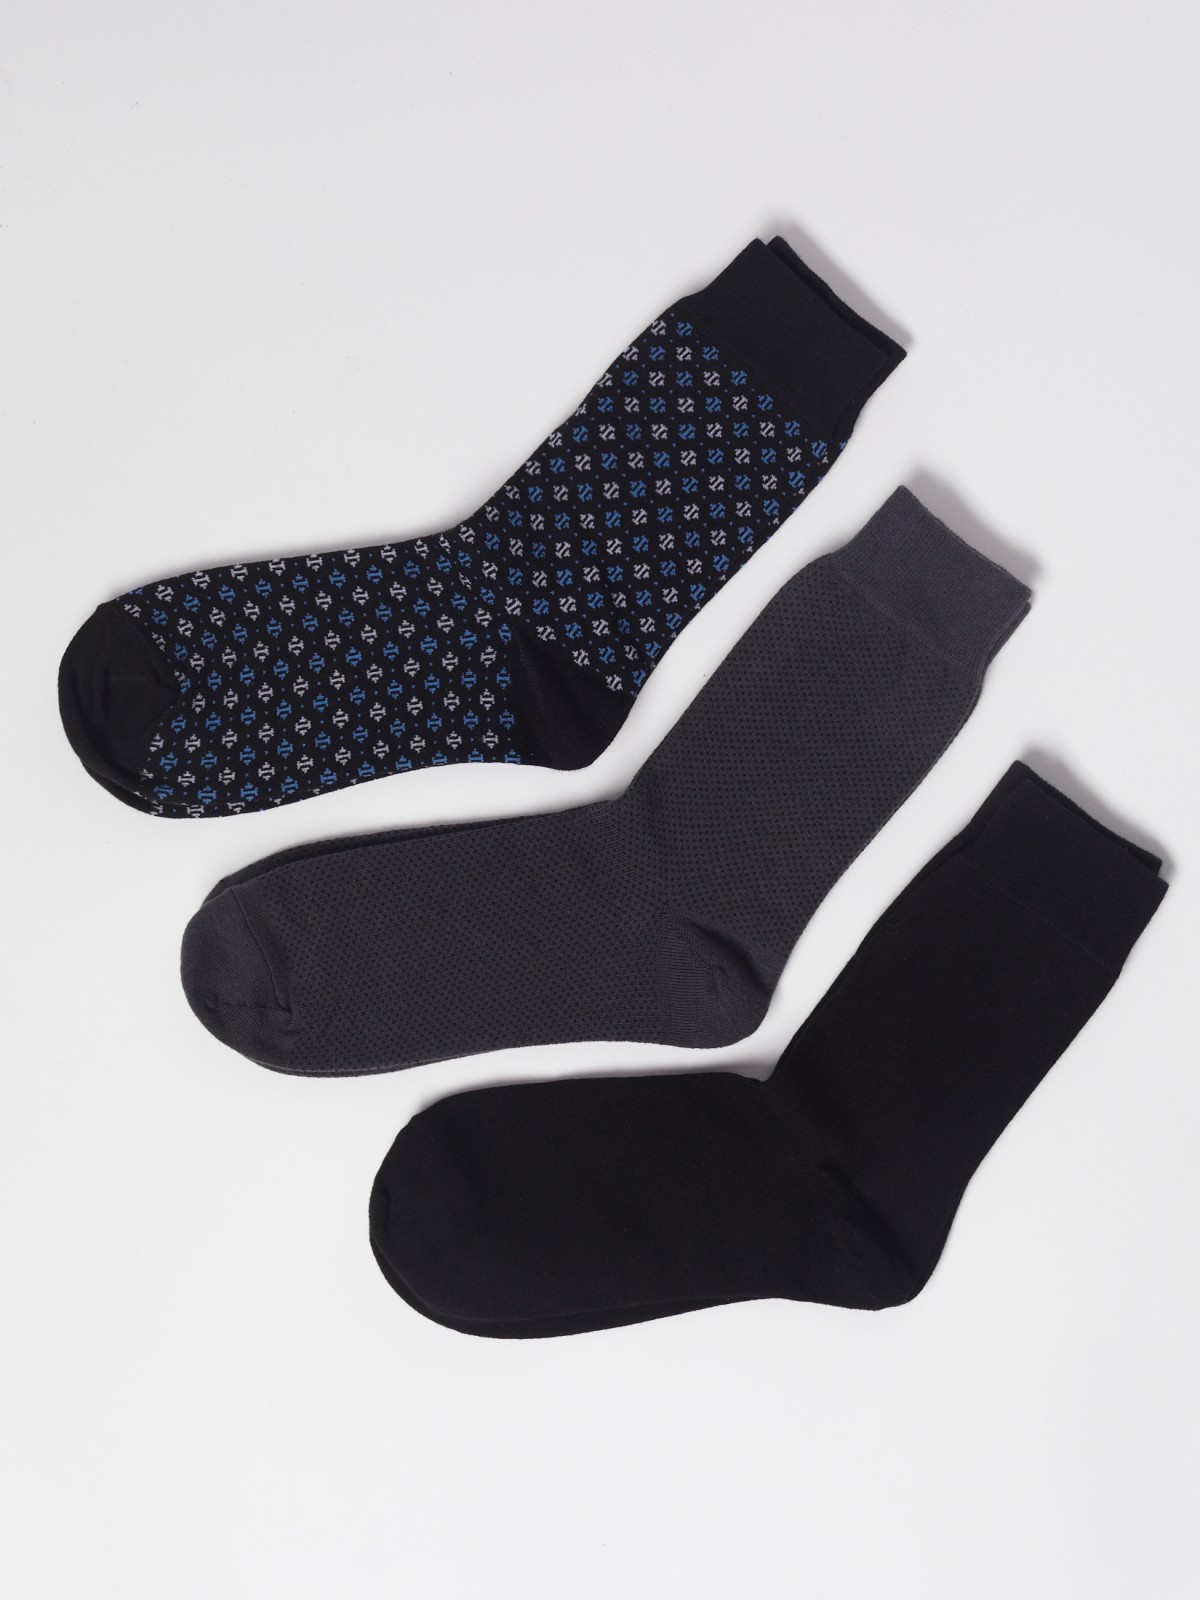 Набор высоких носков (3 пары в комплекте) zolla 01311995G075, цвет мультицвет, размер 25-27 - фото 1